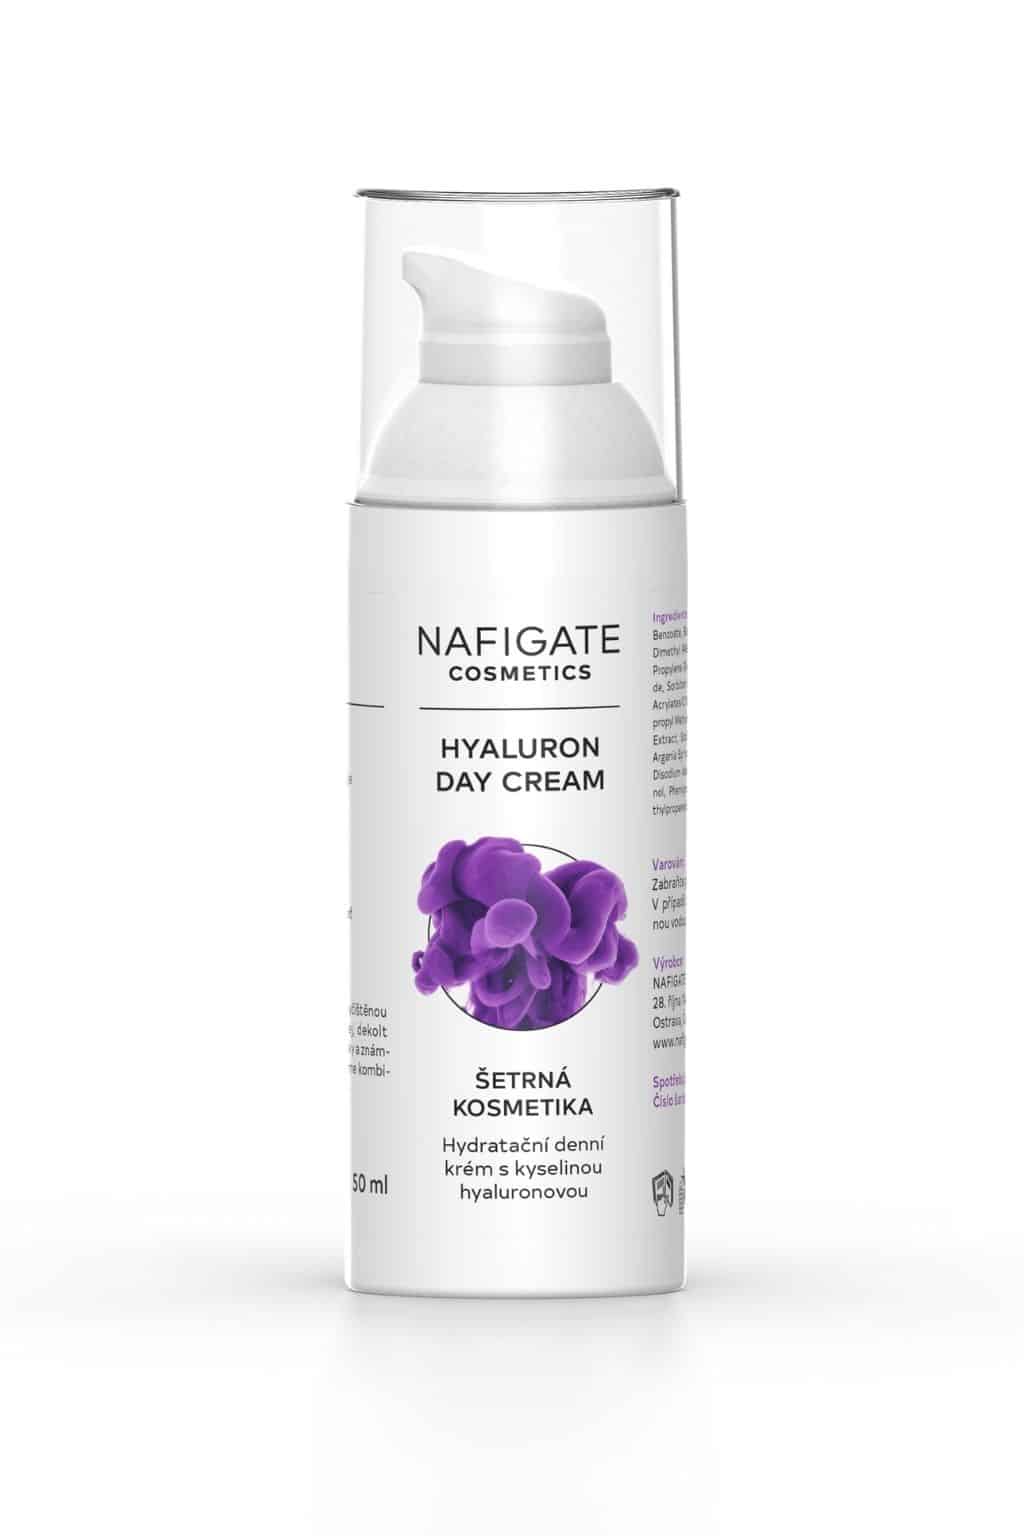 NAFIGATE Hydratační denní krém proti vráskám SPF 15 – Hyaluron Day Cream 50ml